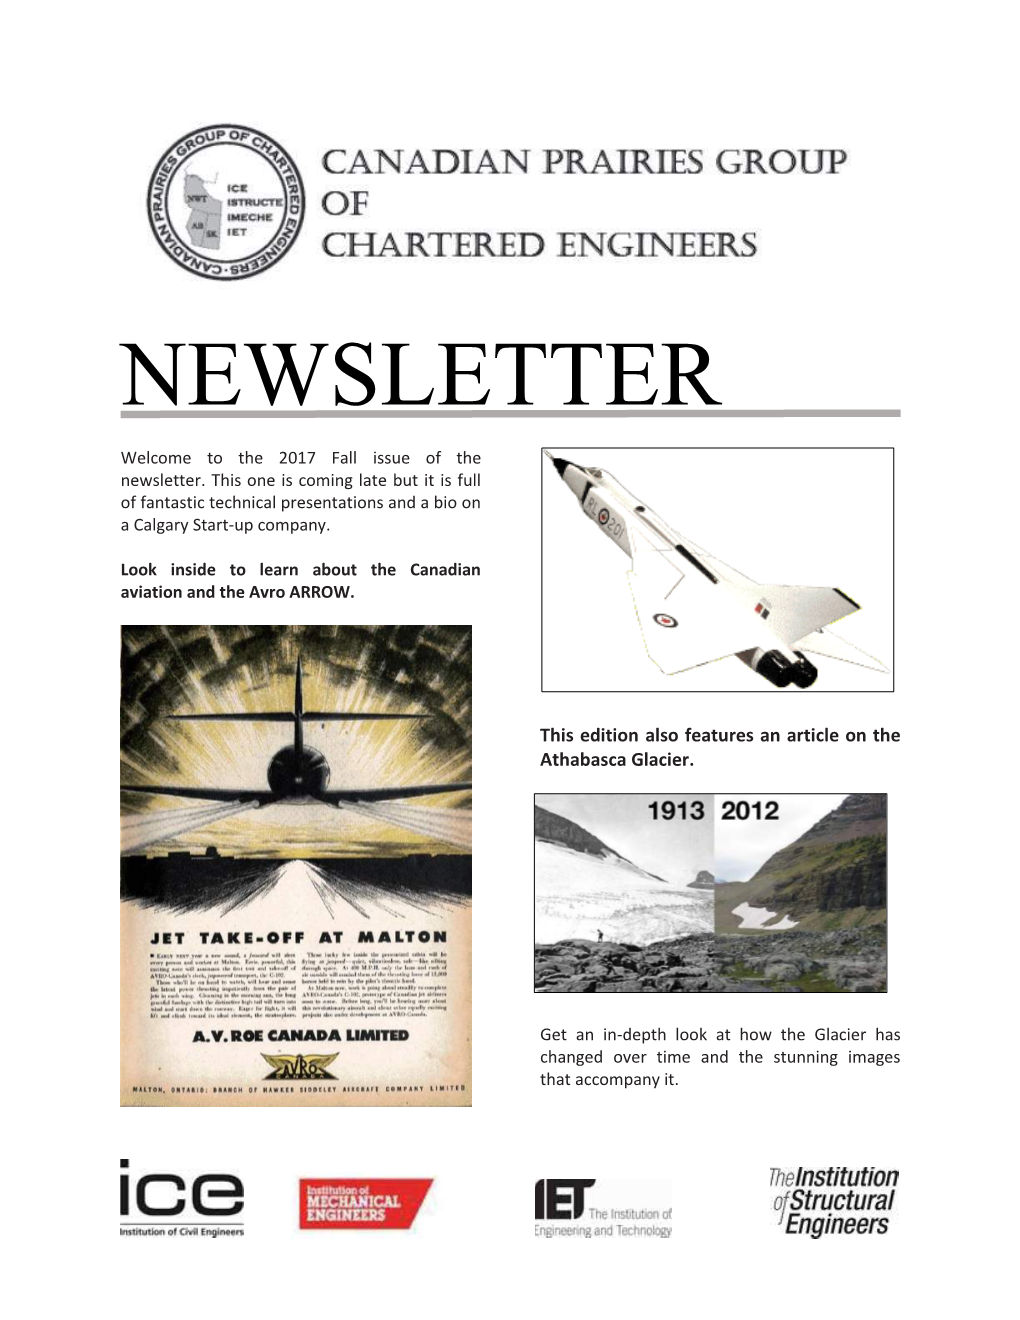 CPGCE Newsletter